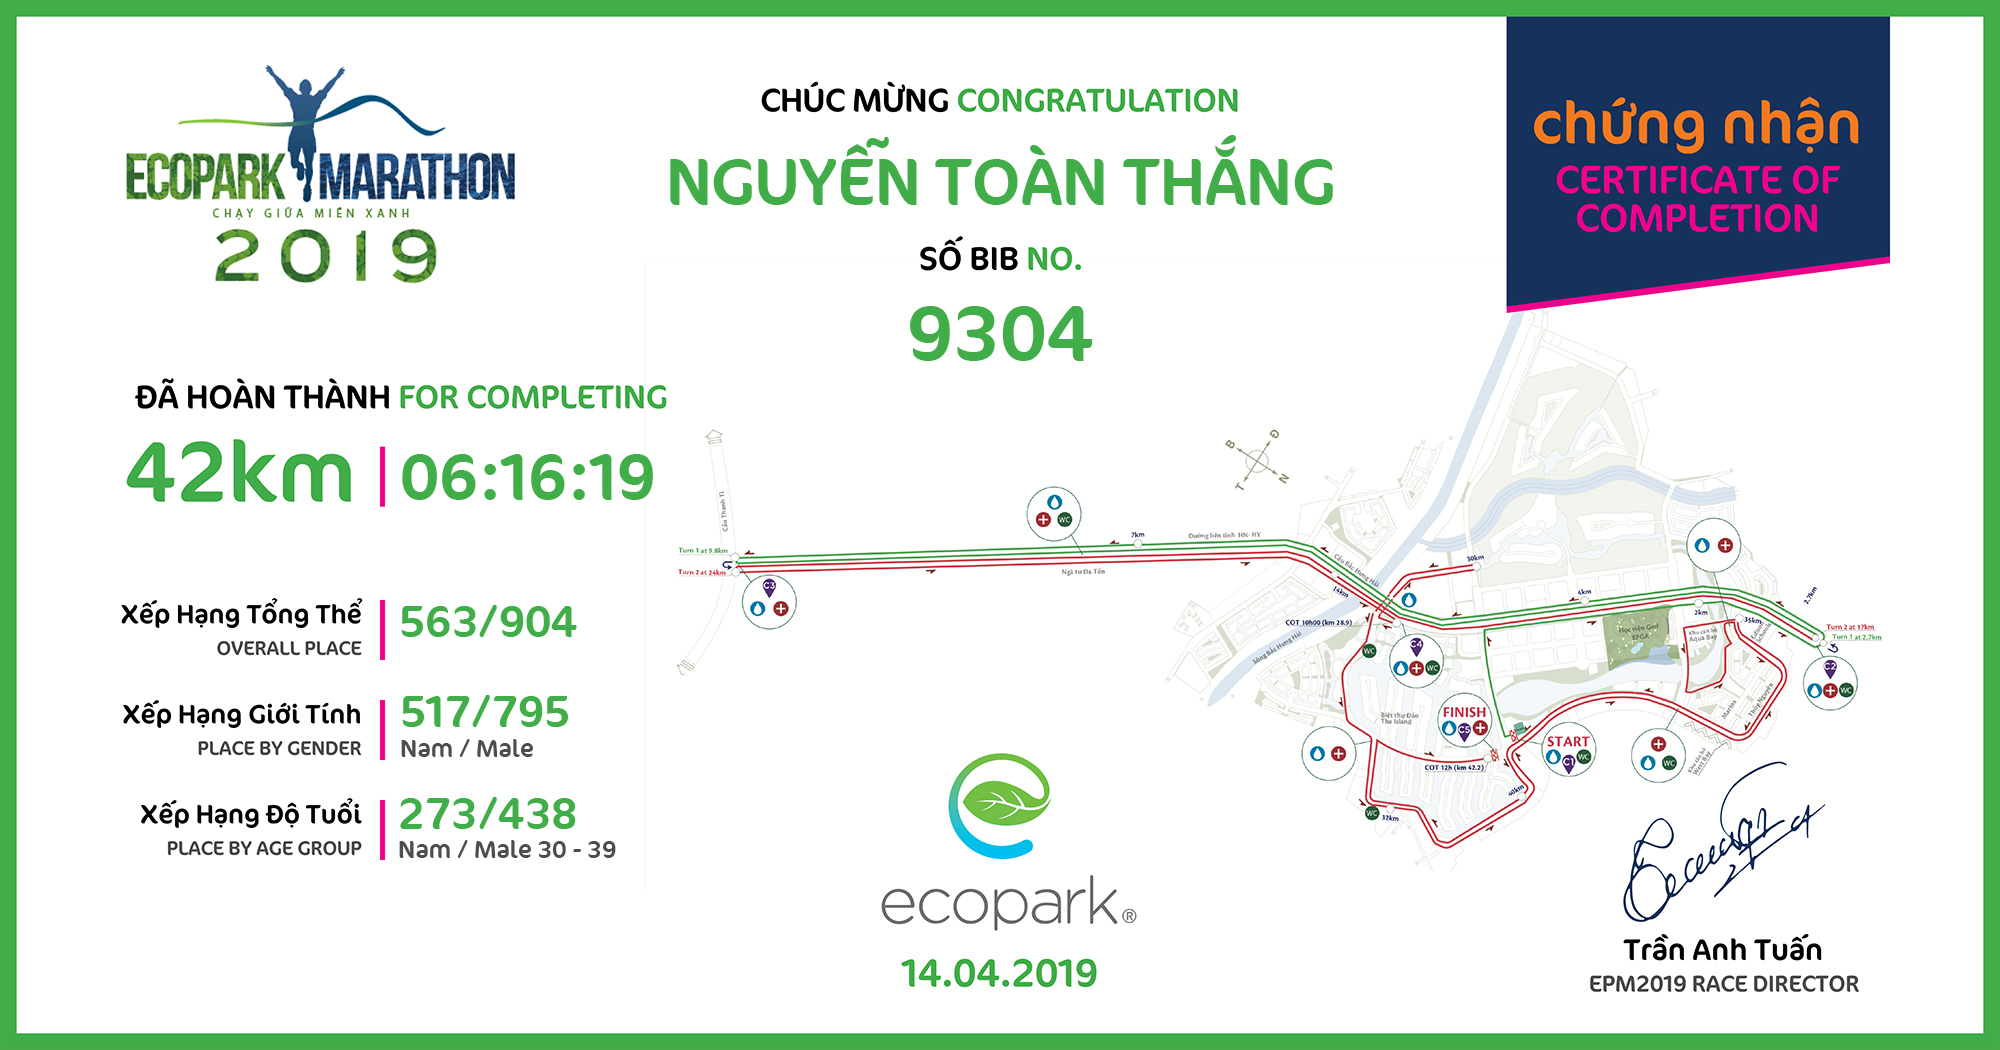 9304 - Nguyễn Toàn Thắng